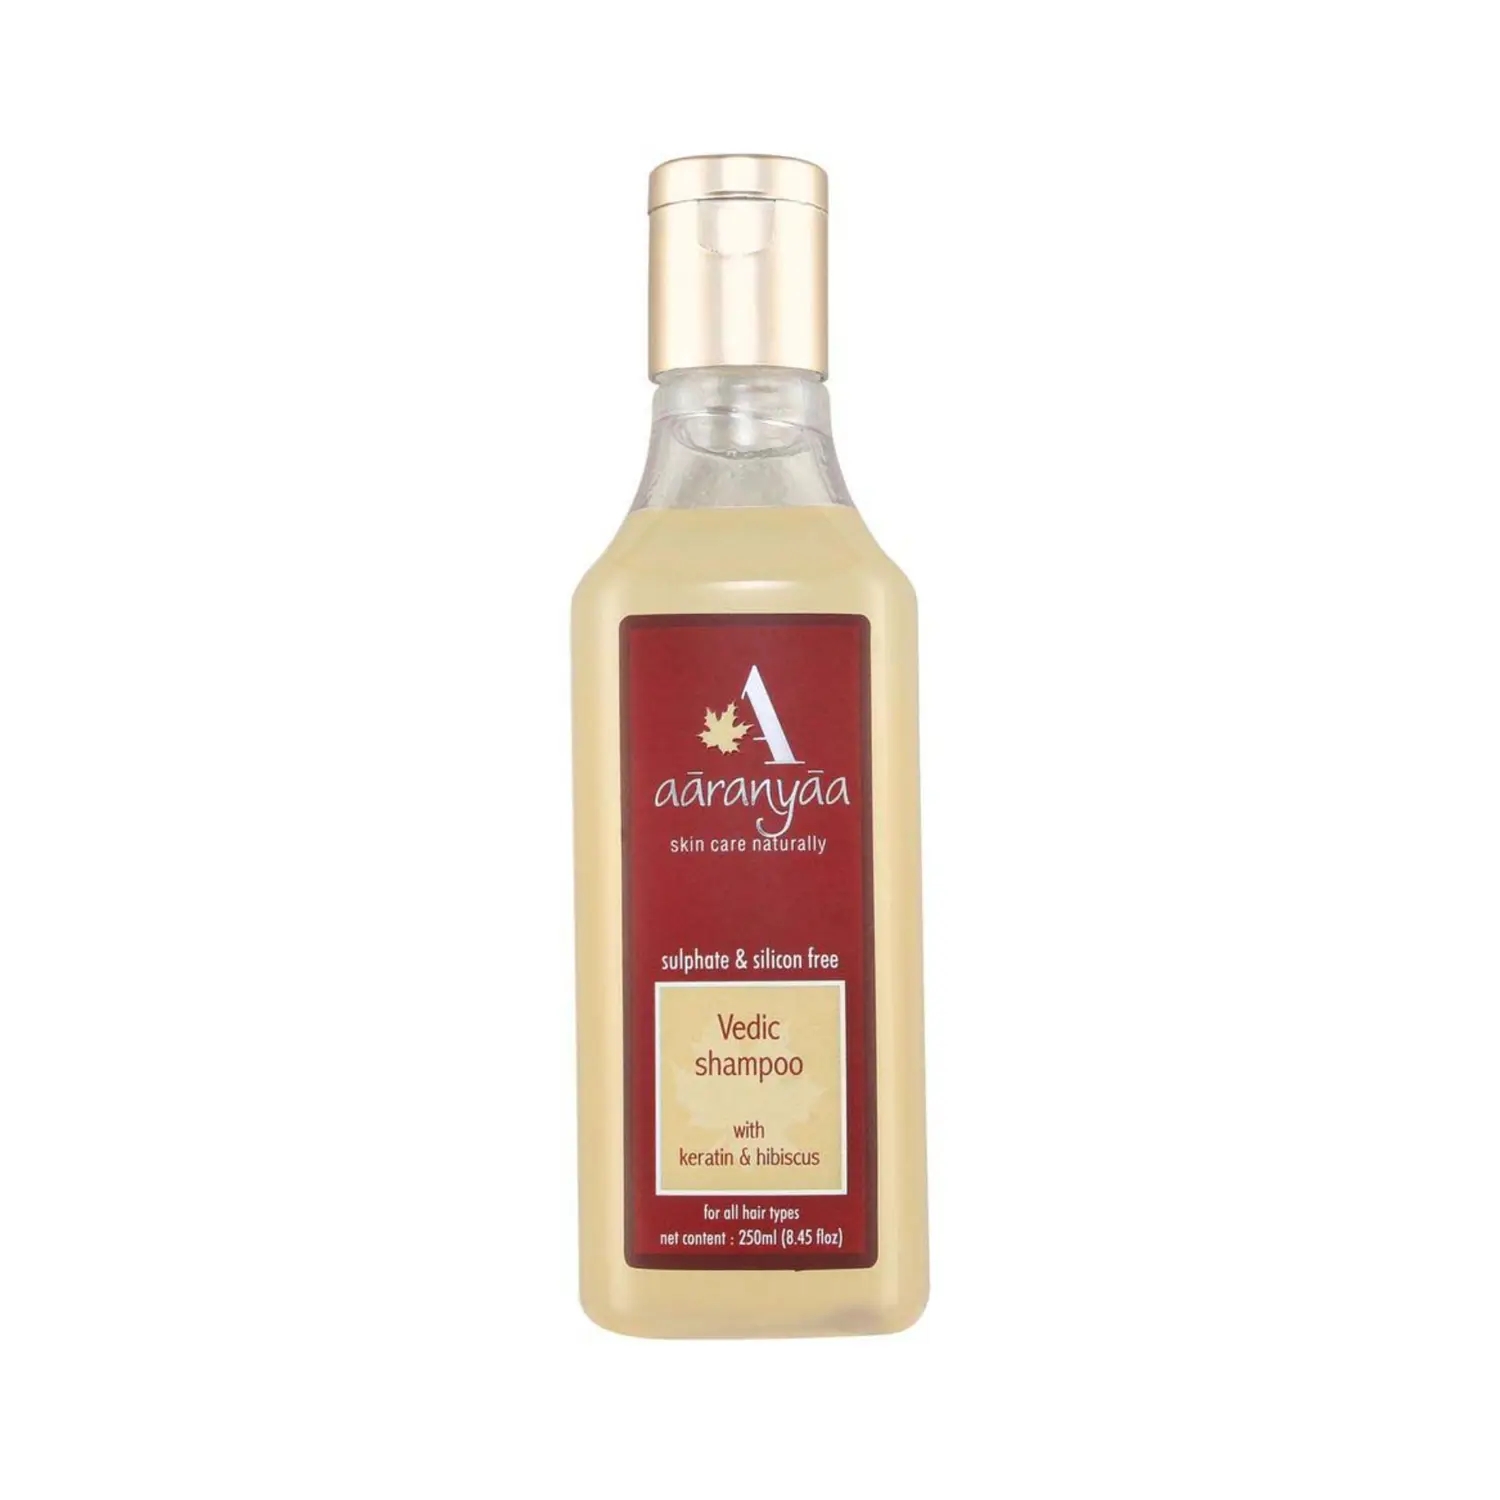 Aaranyaa Vedic Shampoo With Keratin & Hibiscus (250ml)